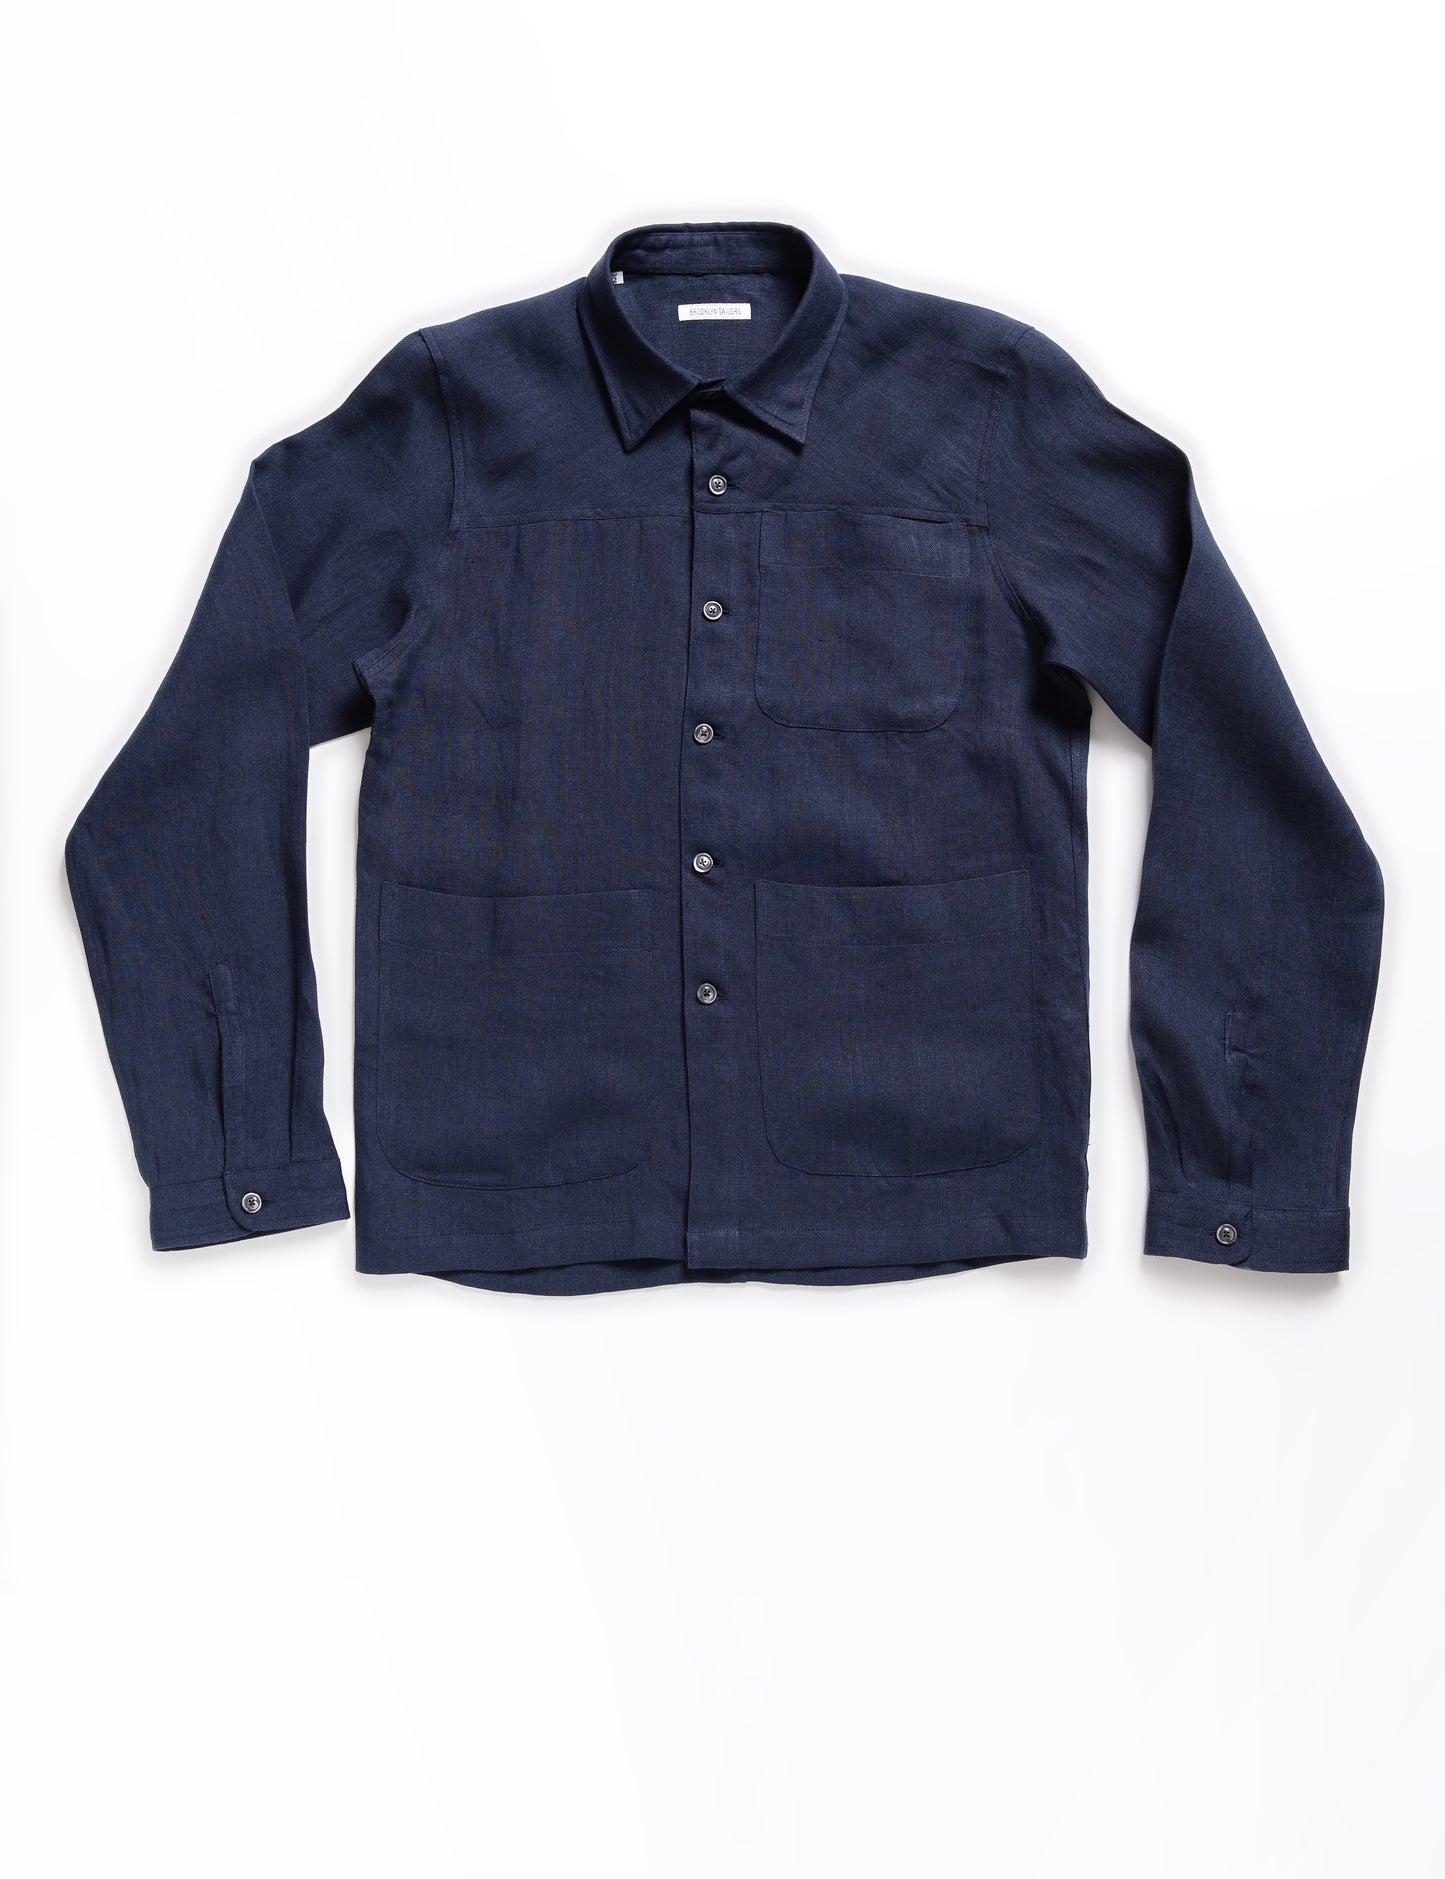 BKT15 Shirt Jacket in Linen Twill - Salerno Blue